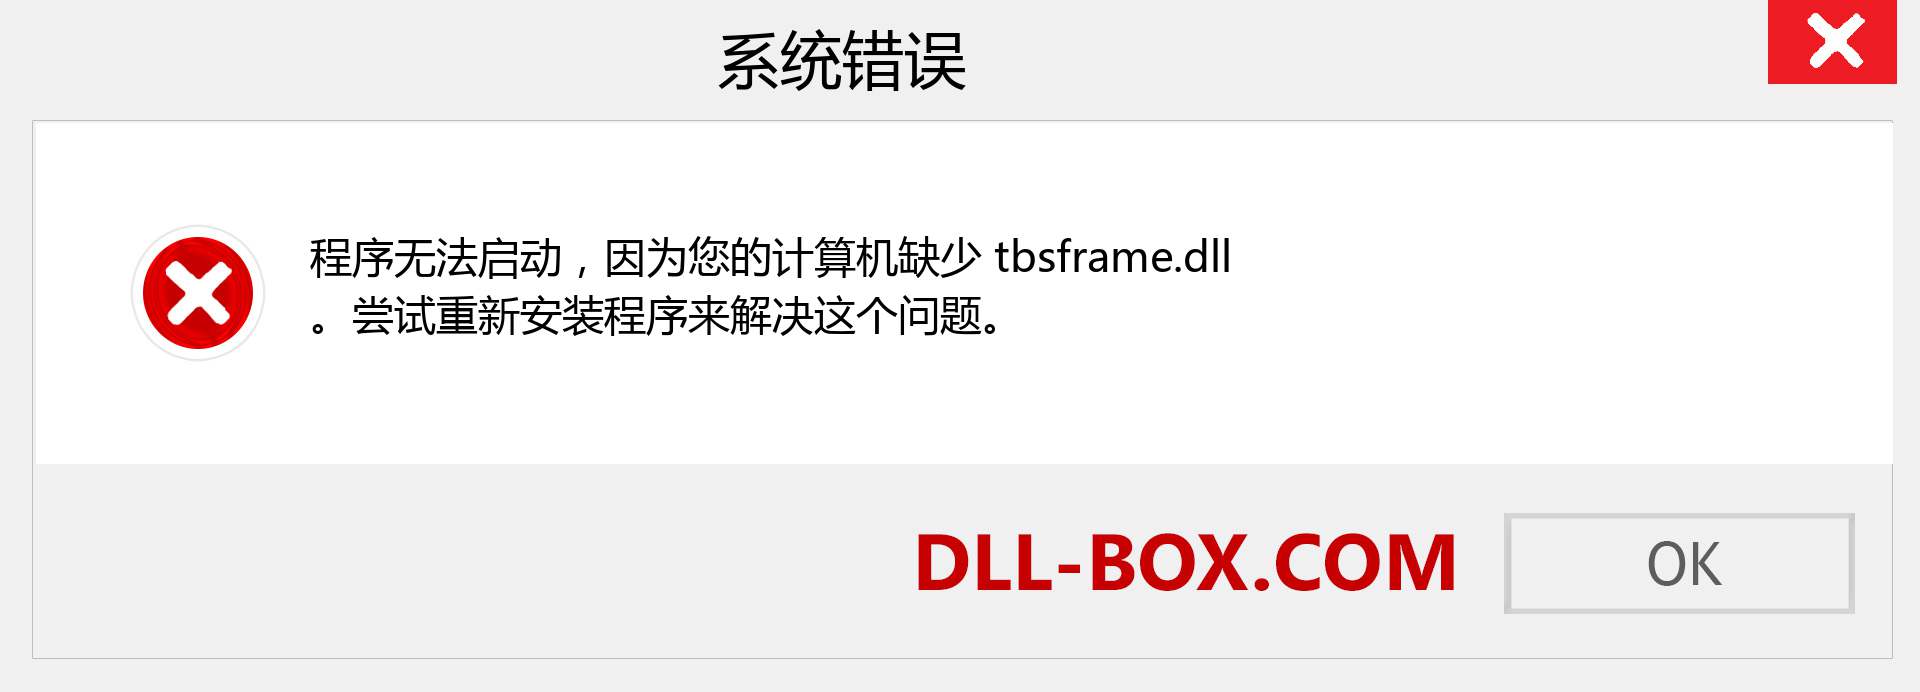 tbsframe.dll 文件丢失？。 适用于 Windows 7、8、10 的下载 - 修复 Windows、照片、图像上的 tbsframe dll 丢失错误